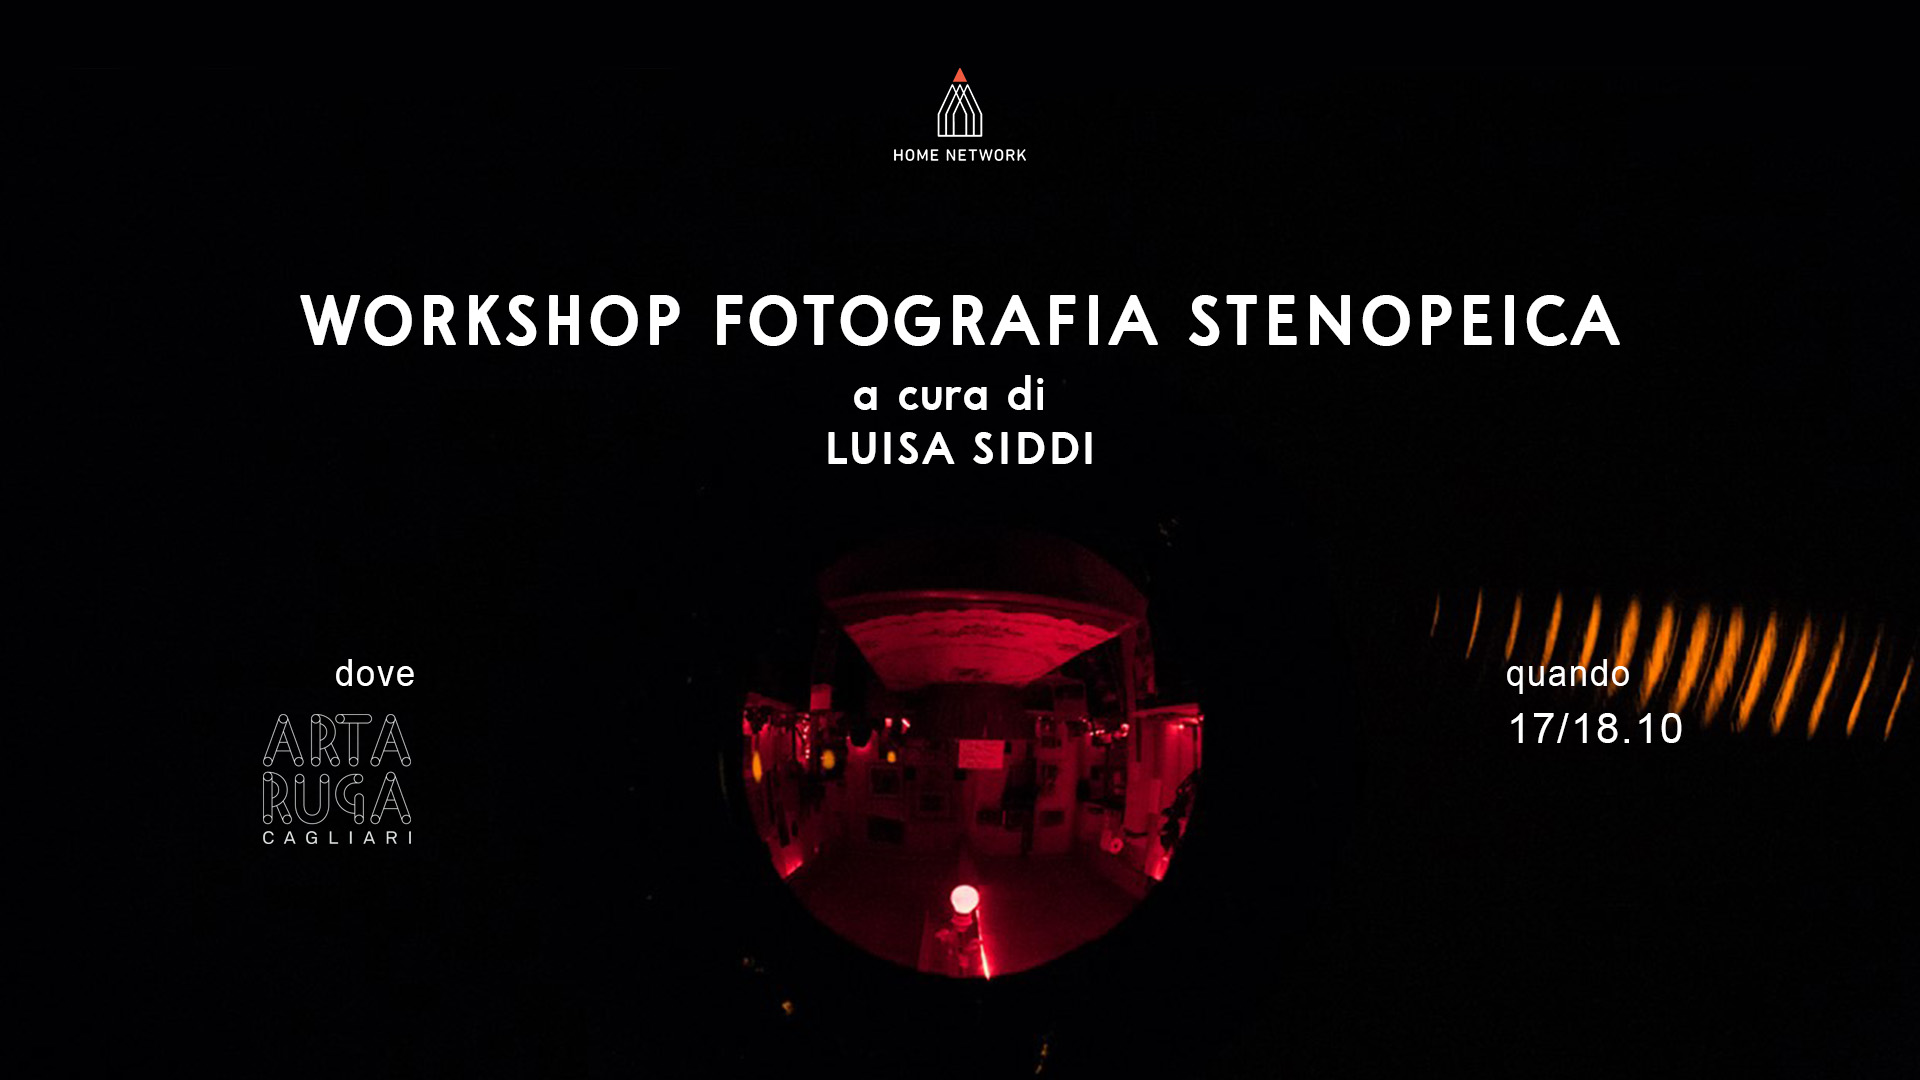 Workshop di fotografia stenopeica